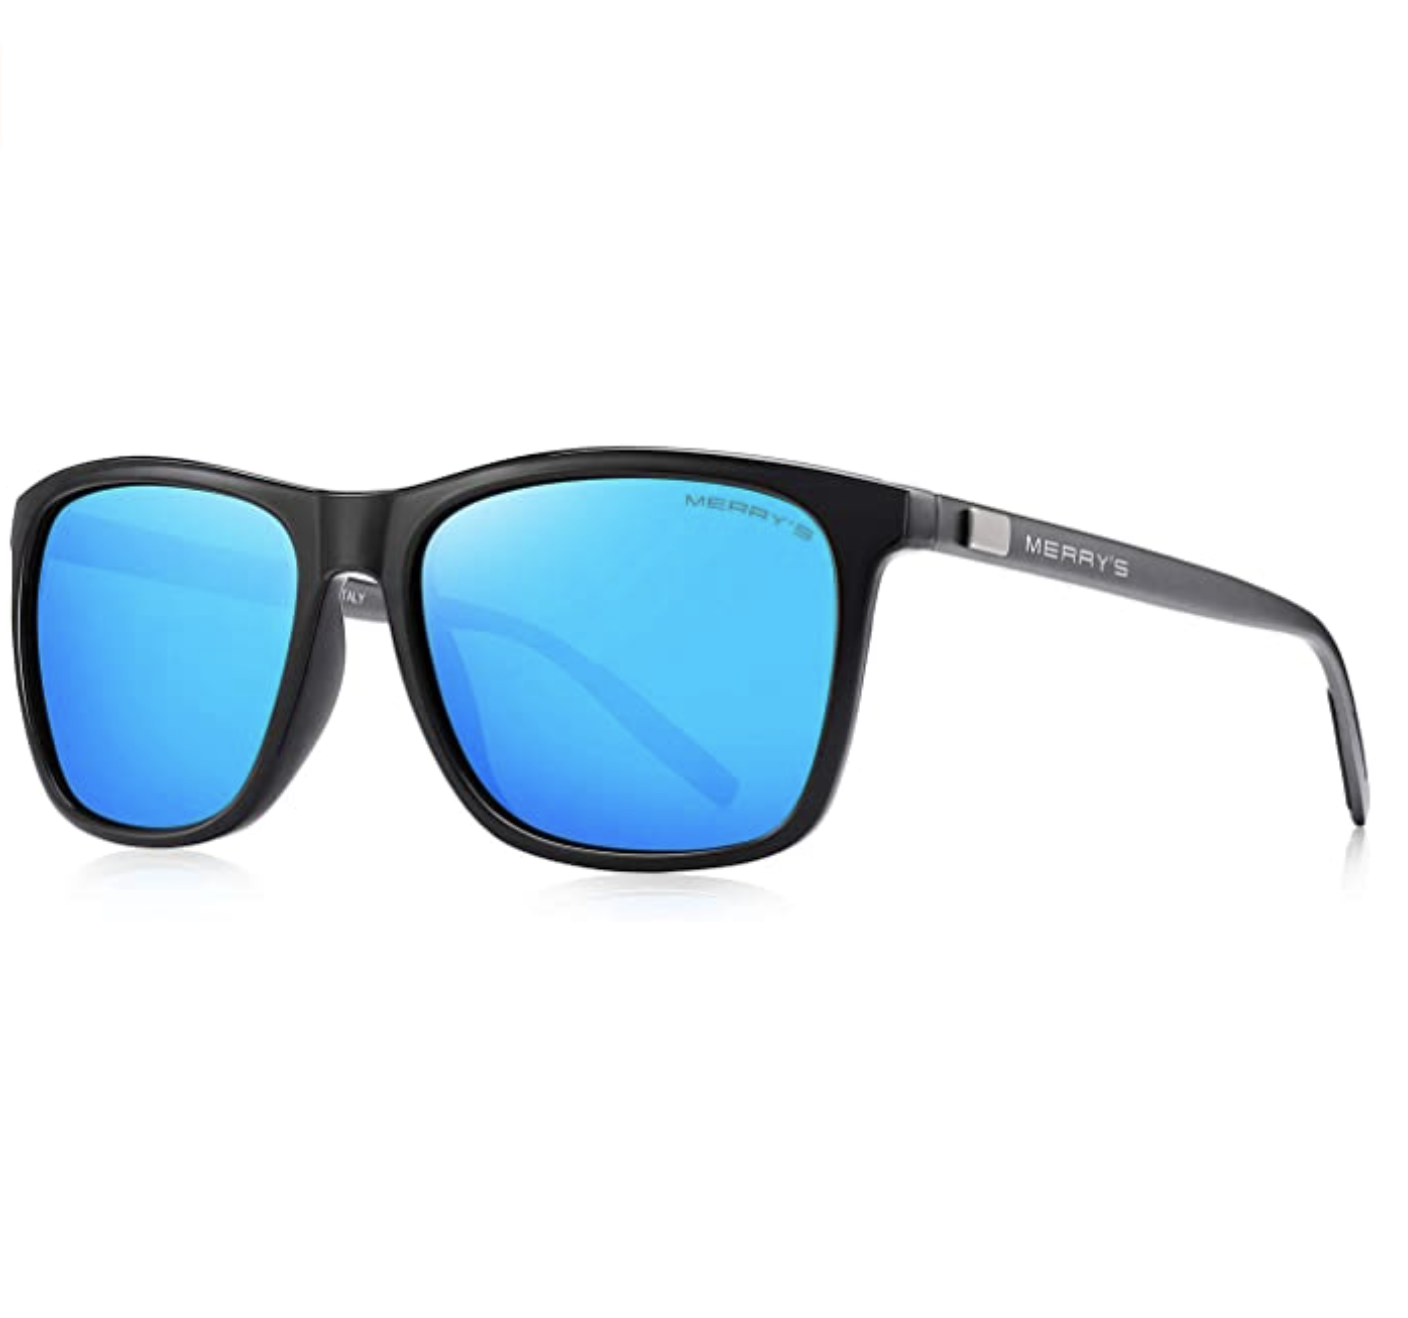 MERRY’S Men’s Composite Lens Anti-Glare Sunglasses